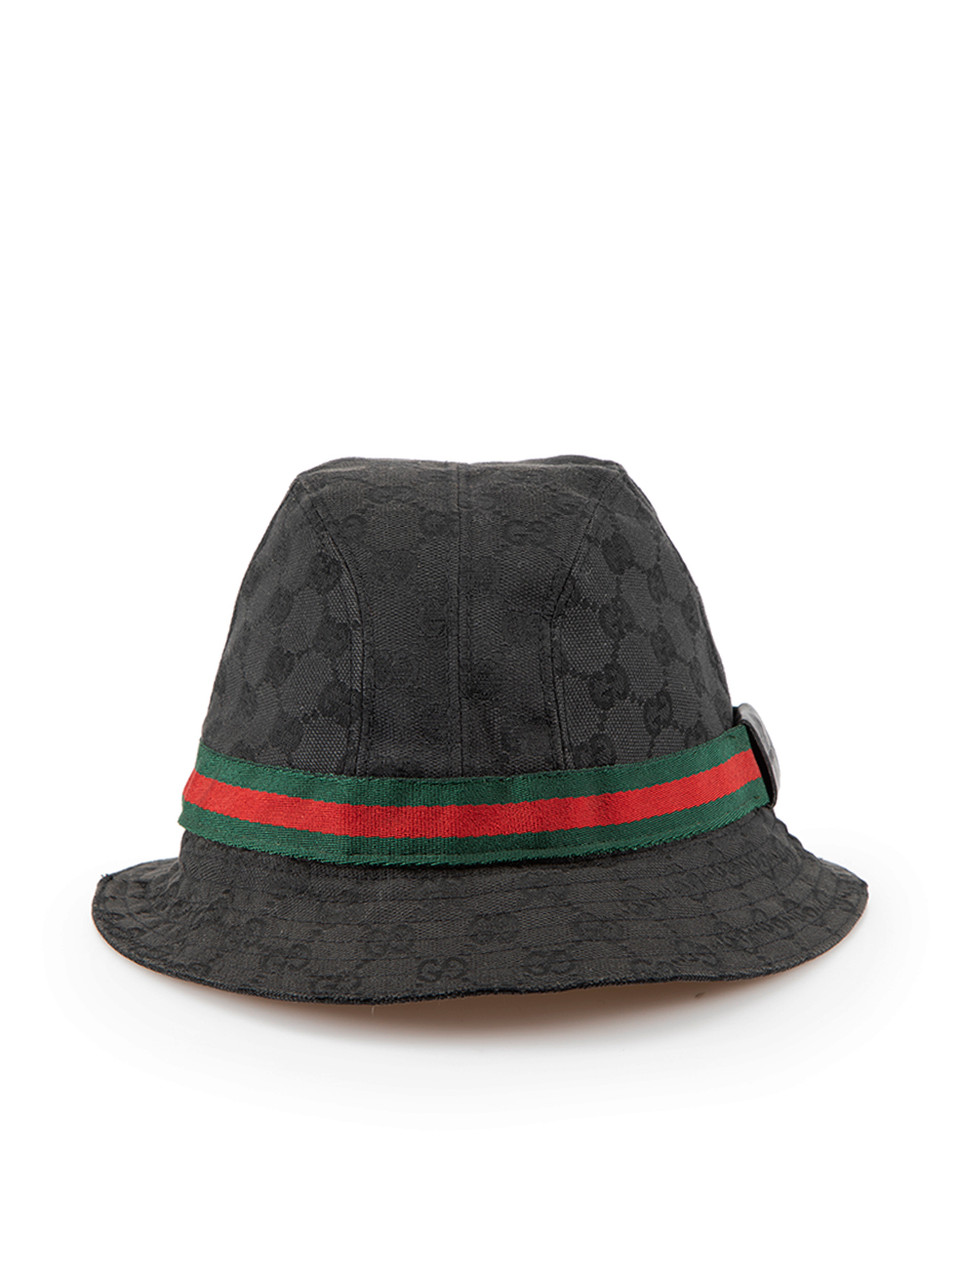 Louis Vuitton - Authenticated Hat - Cotton Black for Men, Never Worn